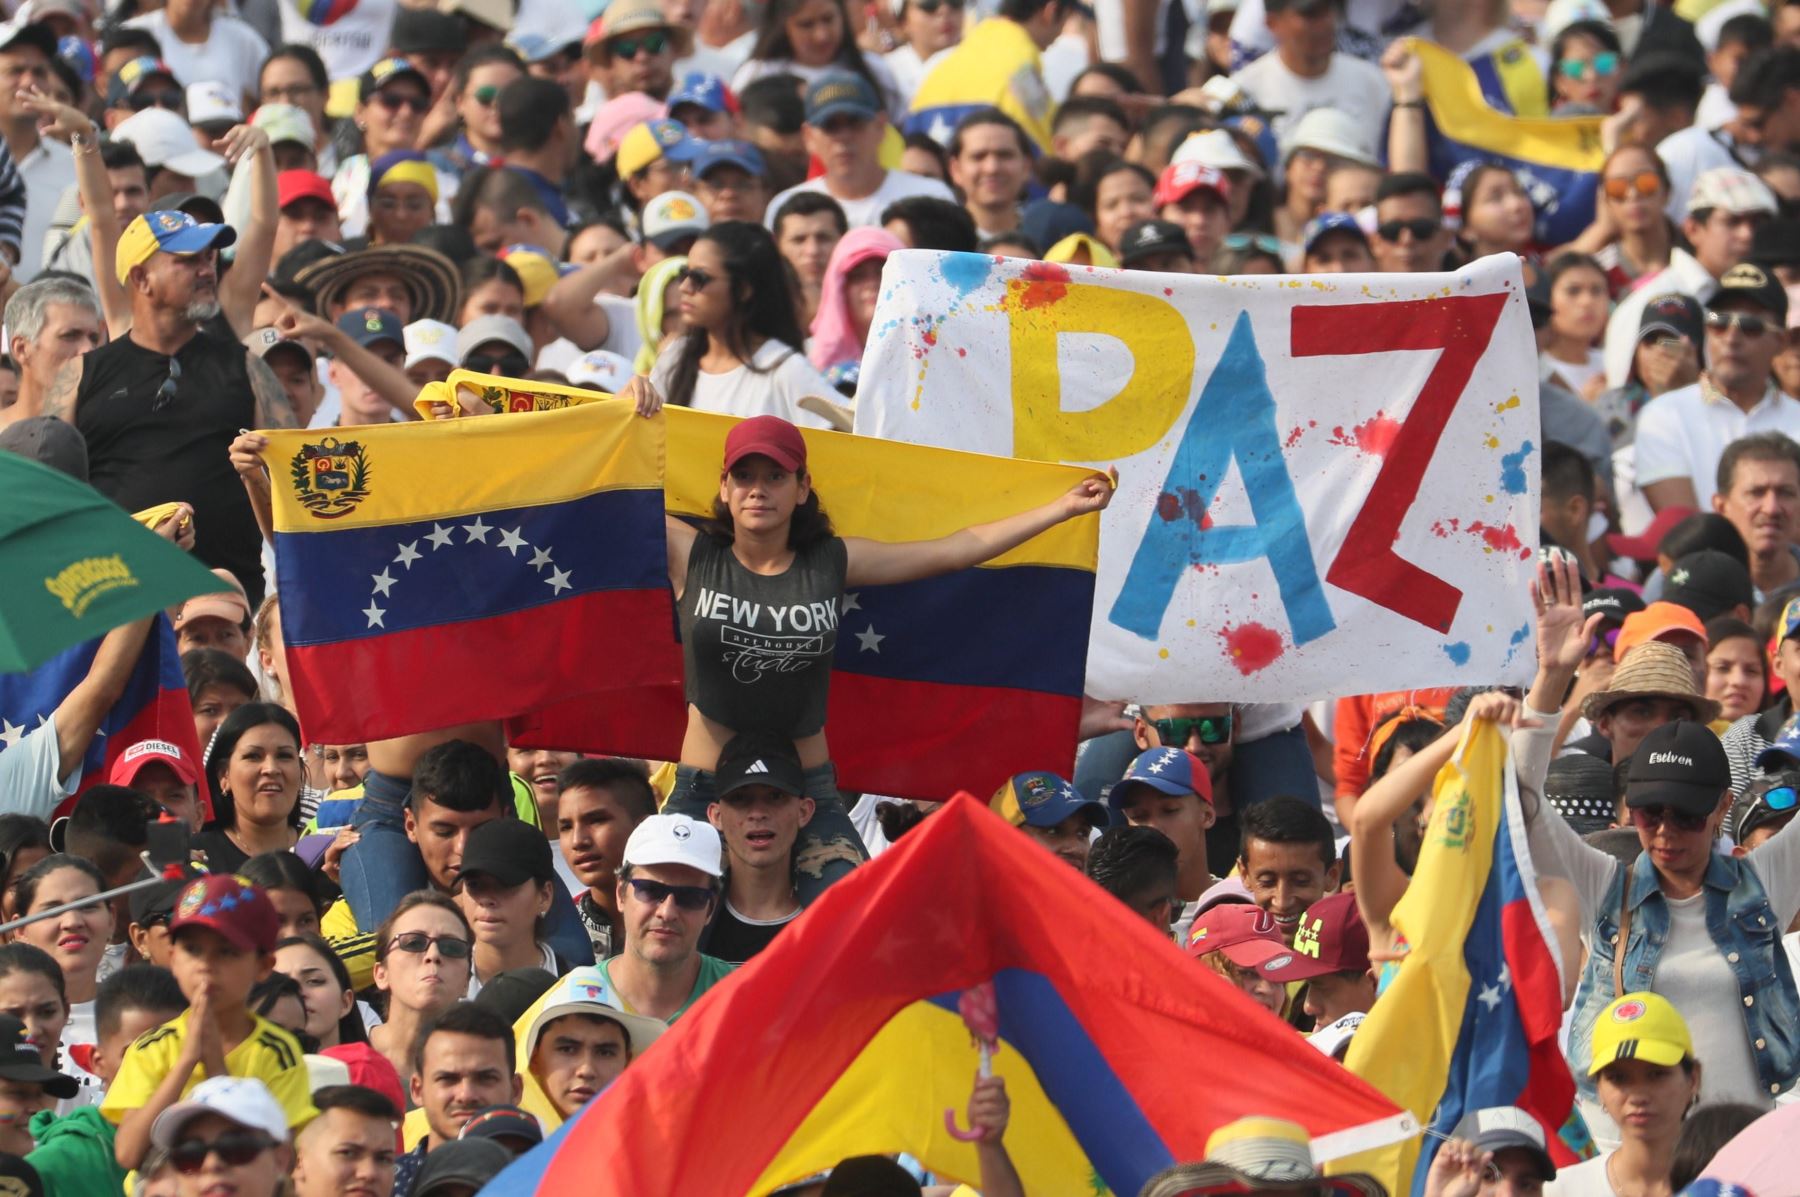 Miles de personas, muchas banderas venezolanas ondulantes asisten al conciertos en la frontera entre Venezuela y Colombia el viernes para un concierto benéfico internacional para impulsar las entregas de ayuda humanitaria en desafío al bloqueo del gobierno del presidente Nicolás Maduro. EFE